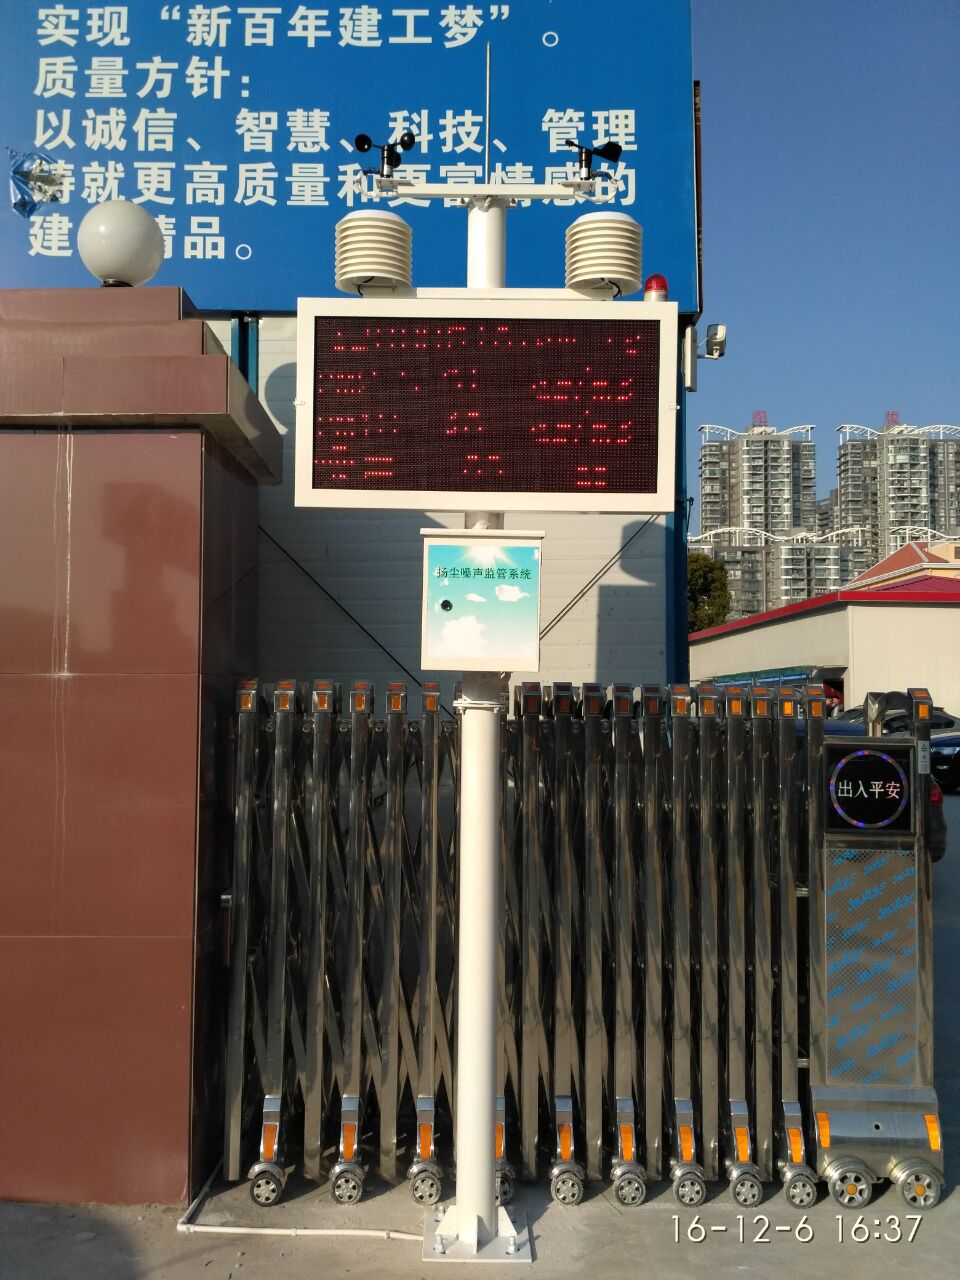 工地扬尘污染监测方案 在建工地扬尘监测设备 北京工地pm2.5检测仪 厂家报价